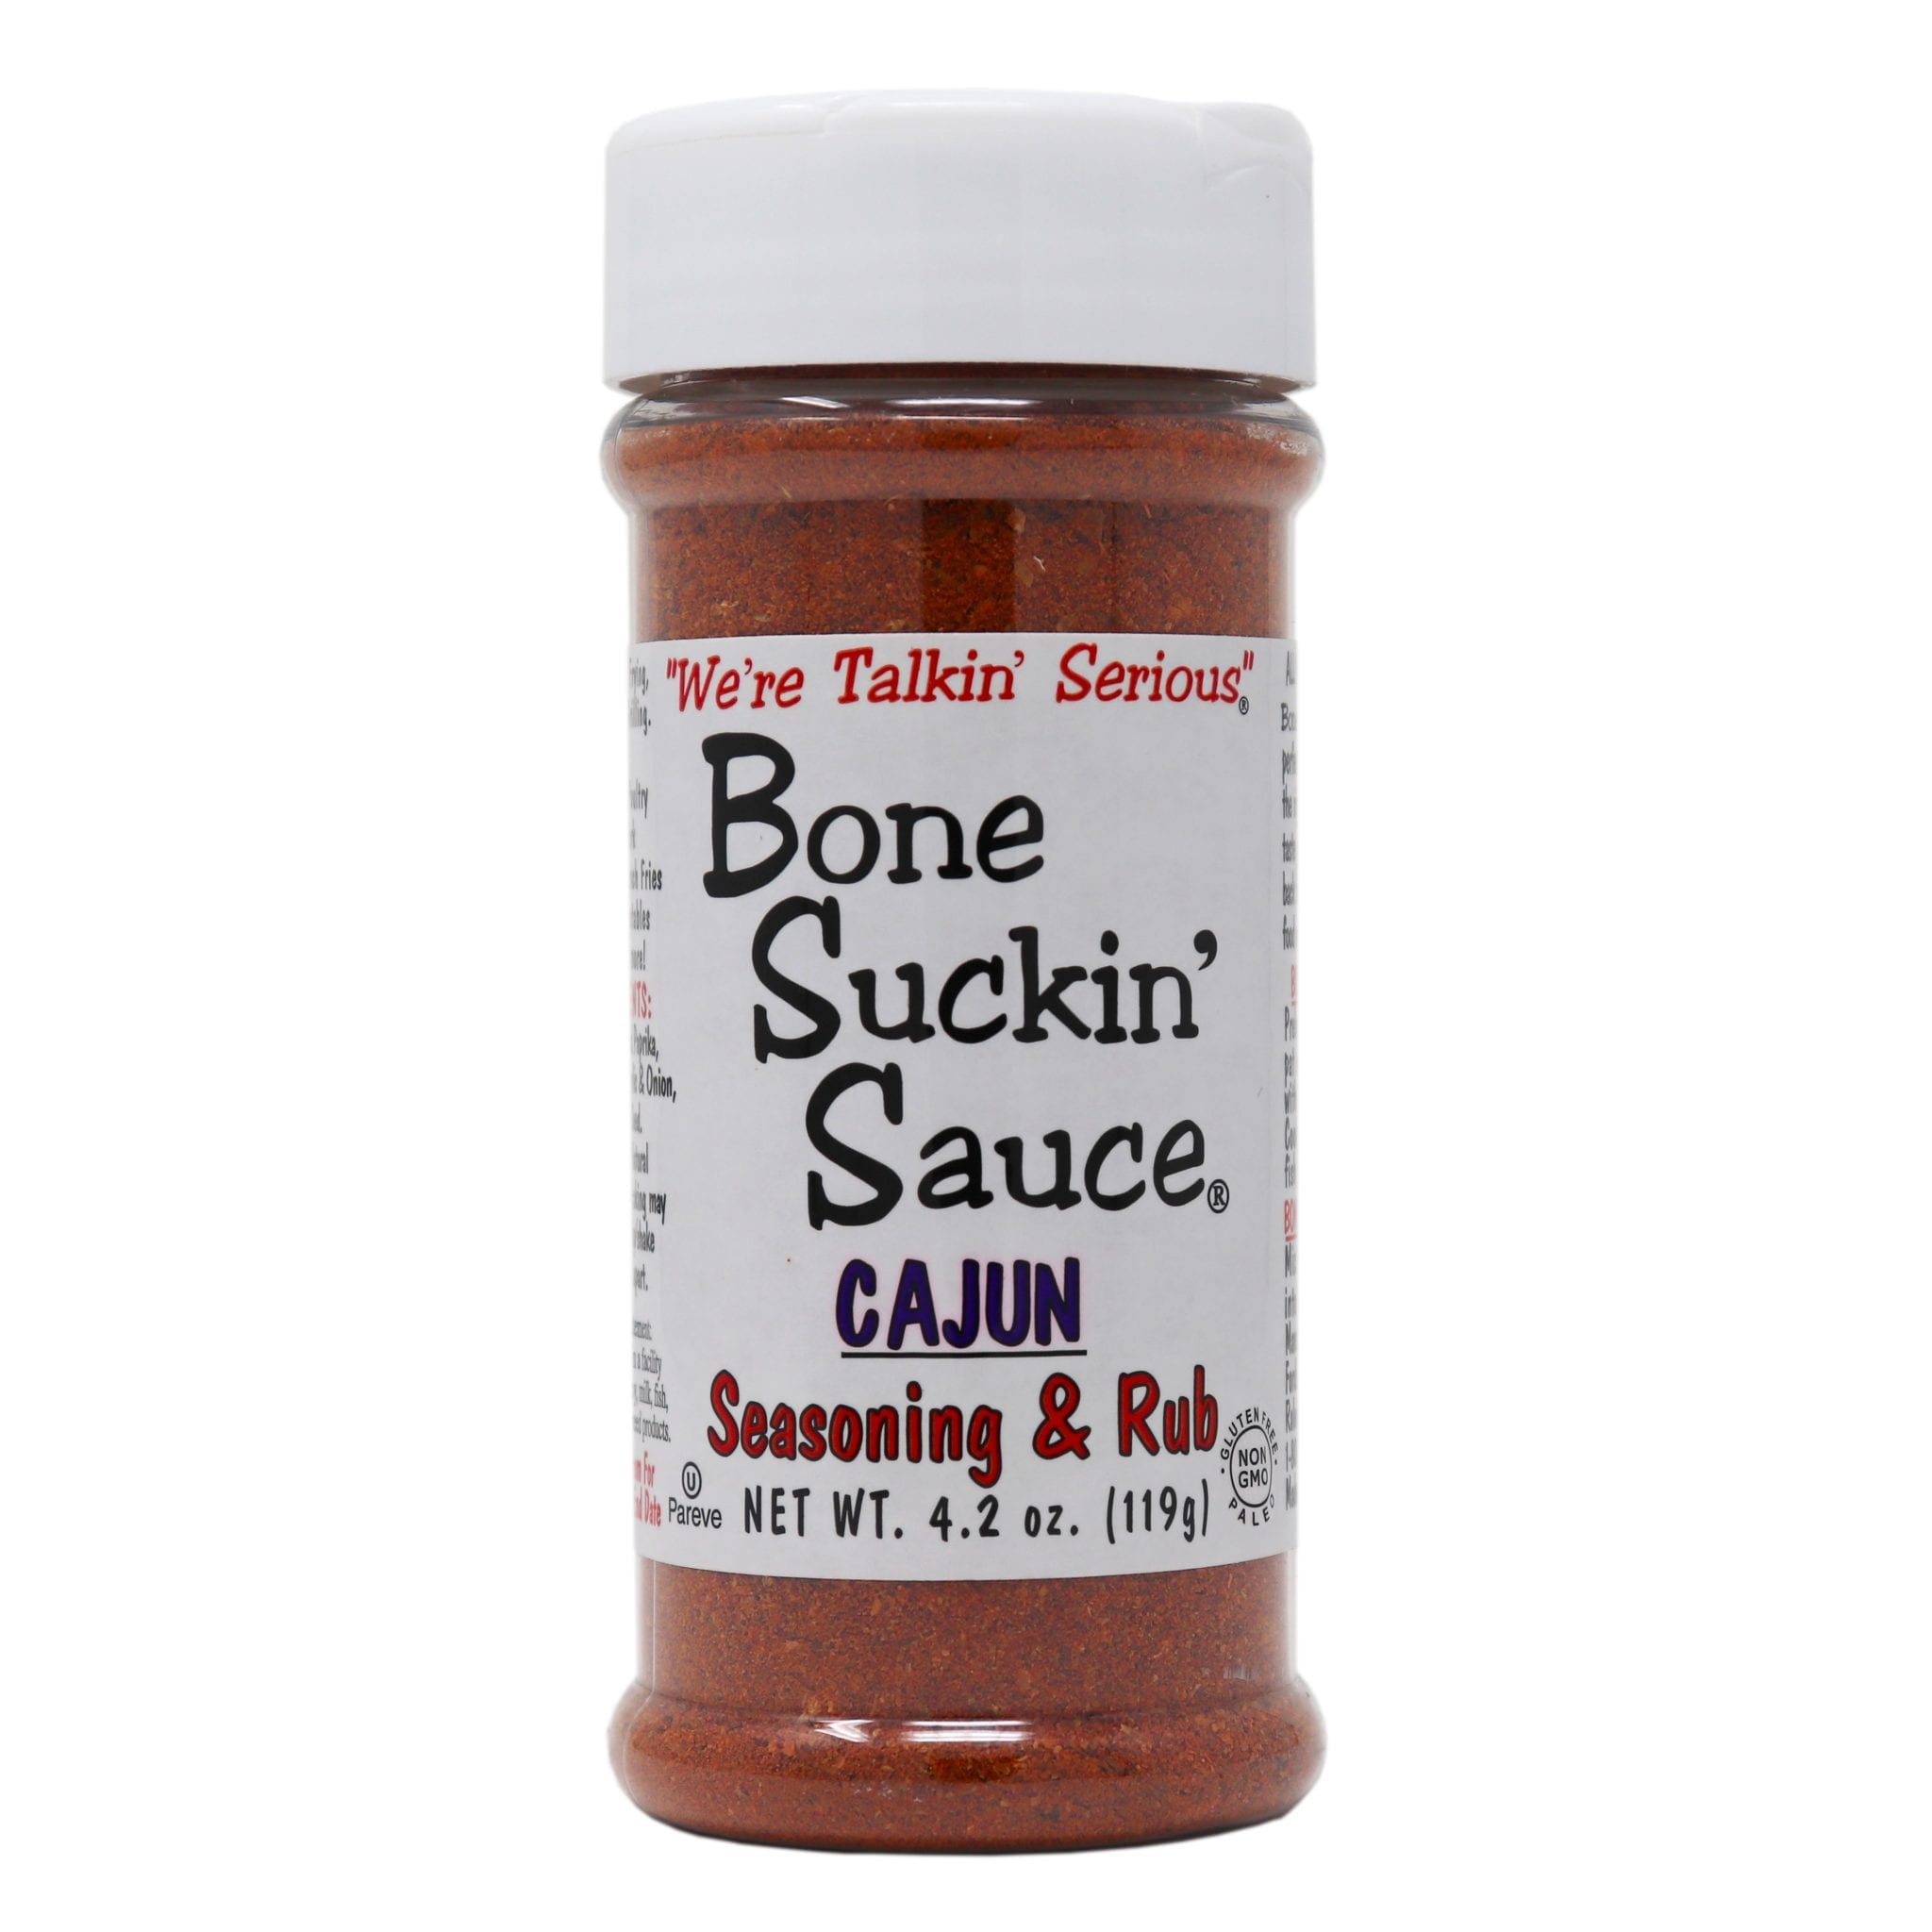 Bone Suckin’ Cajun Seasoning & Rub 4.2 oz